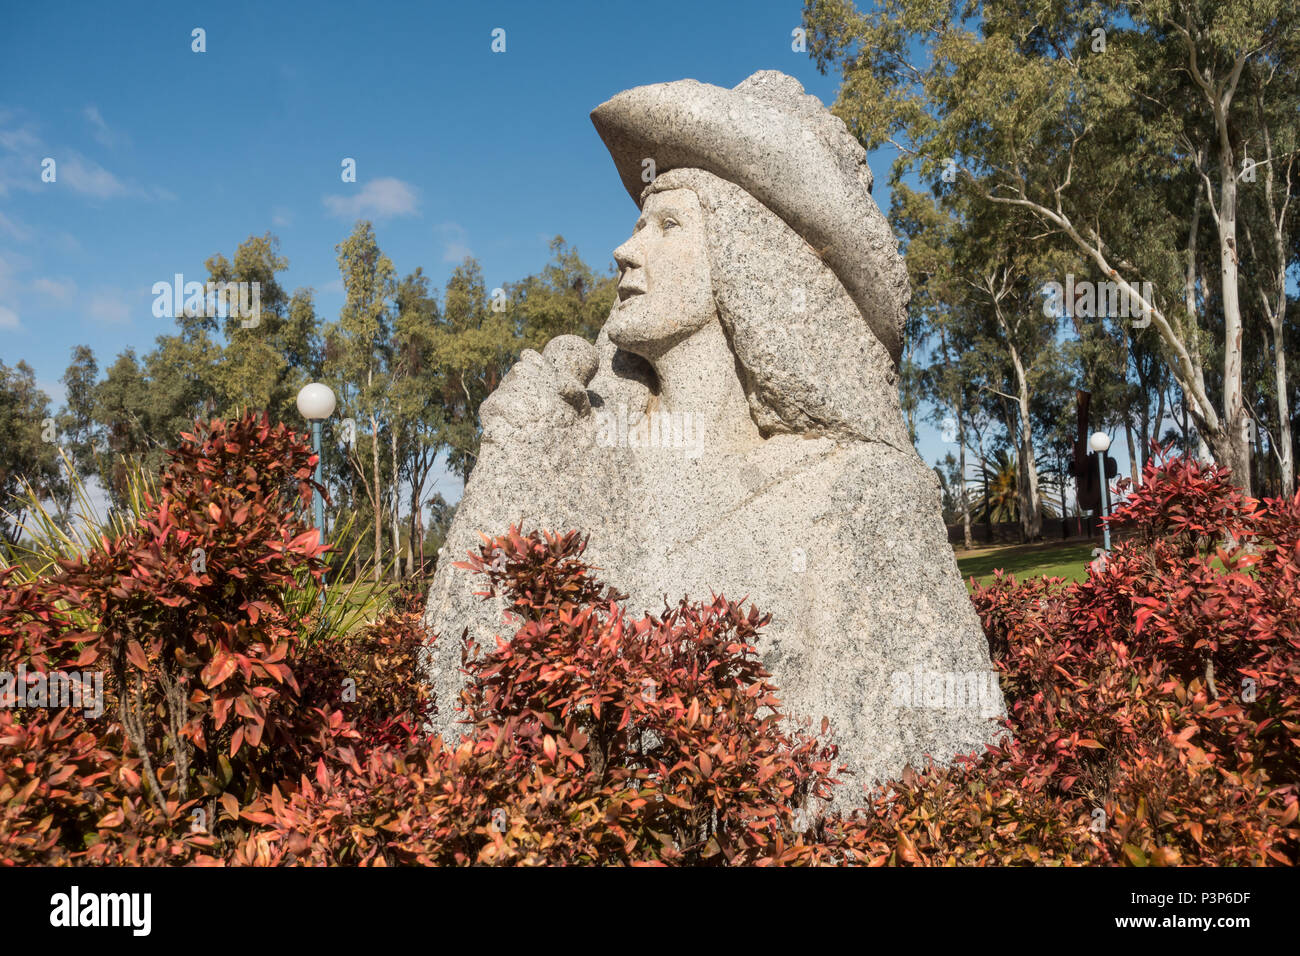 Sculpture représentant des chanteurs de country. Parc du Bicentenaire, Tamworth NSW Australie. Banque D'Images